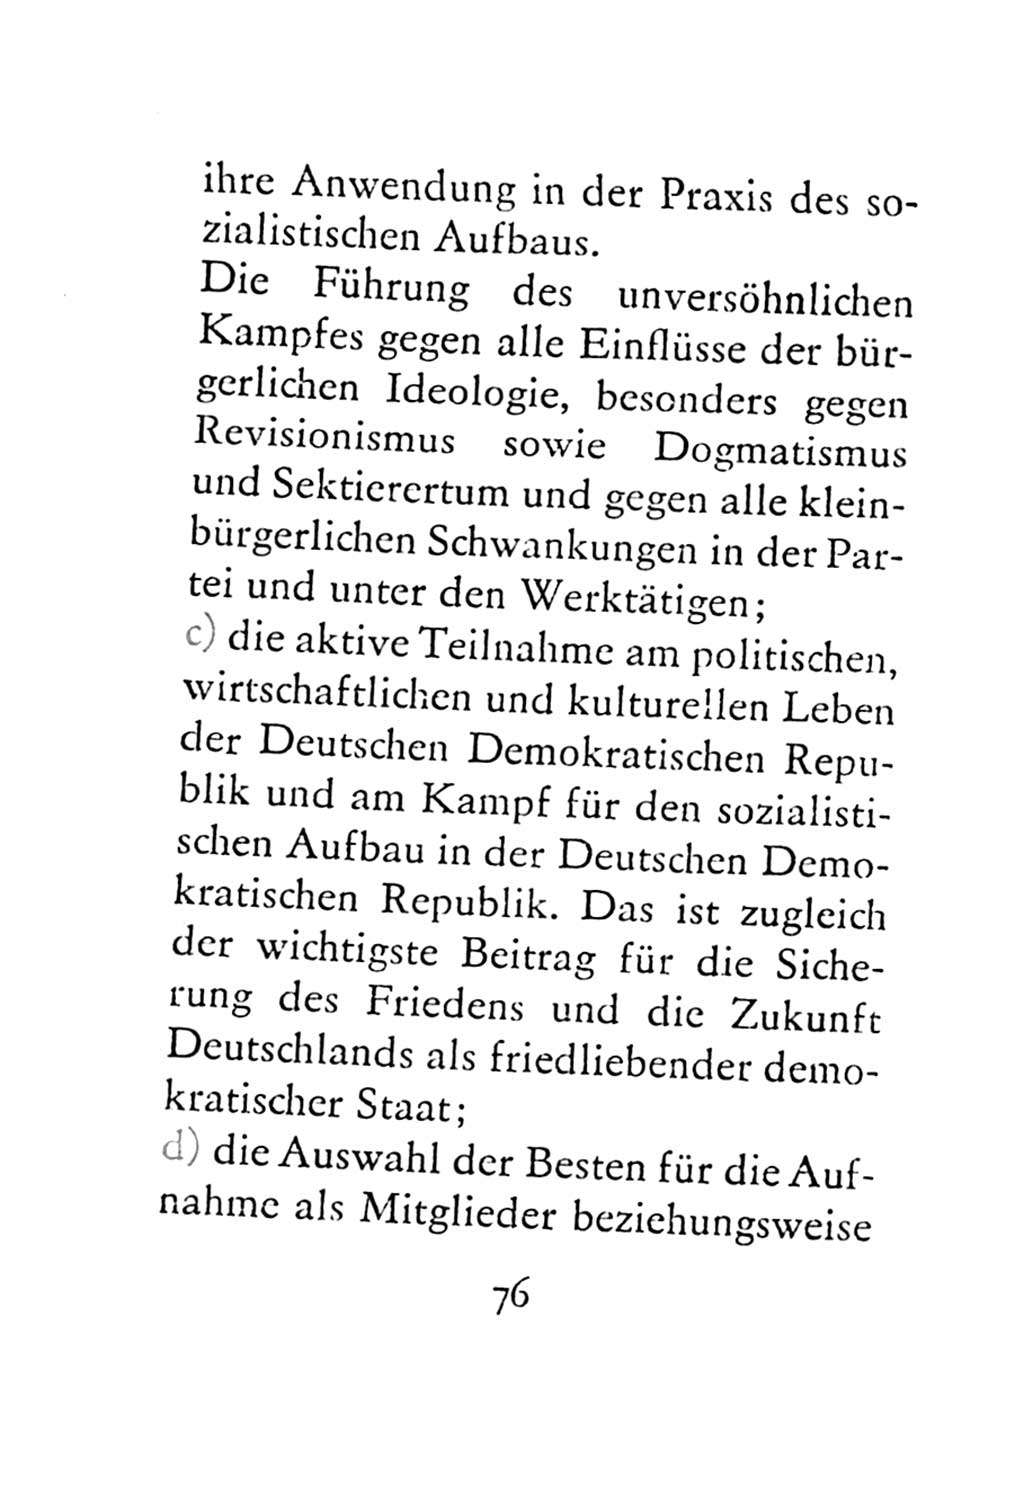 Statut der Sozialistischen Einheitspartei Deutschlands (SED) 1971, Seite 76 (St. SED DDR 1971, S. 76)